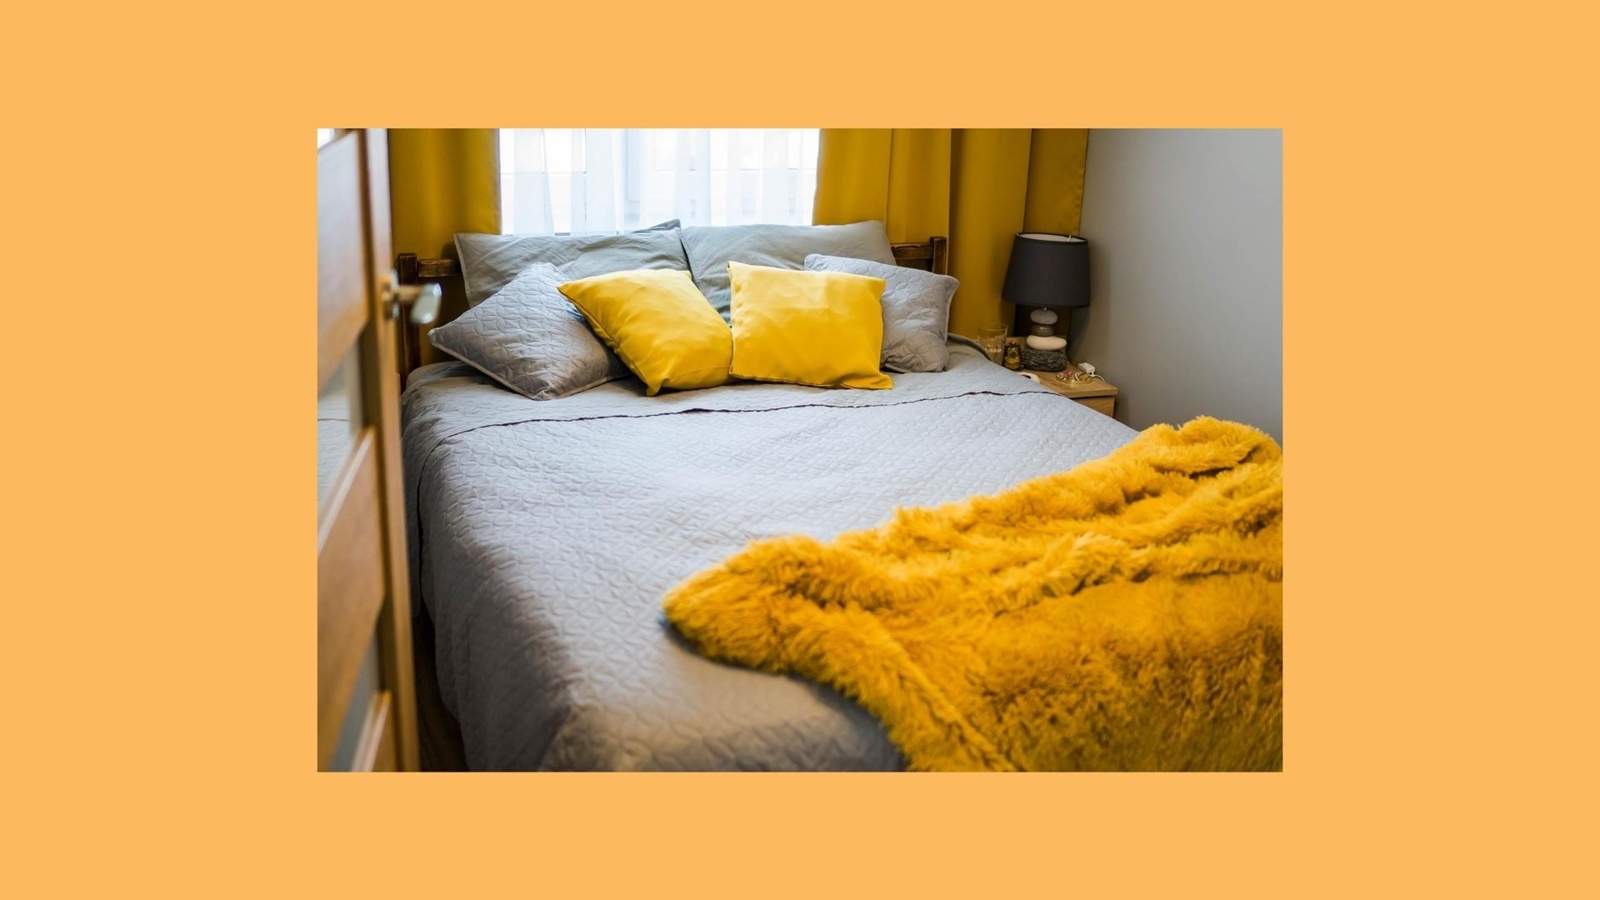 inspiracje pomysły jak urządzić sypialnię żółte zaciemniające grube zasłony żółte dodatki w mieszkaniu szara narzuta pościel na łóżko tanie szafki nocne pufa do sypialni tiulowe zasłony ikea boprix cena